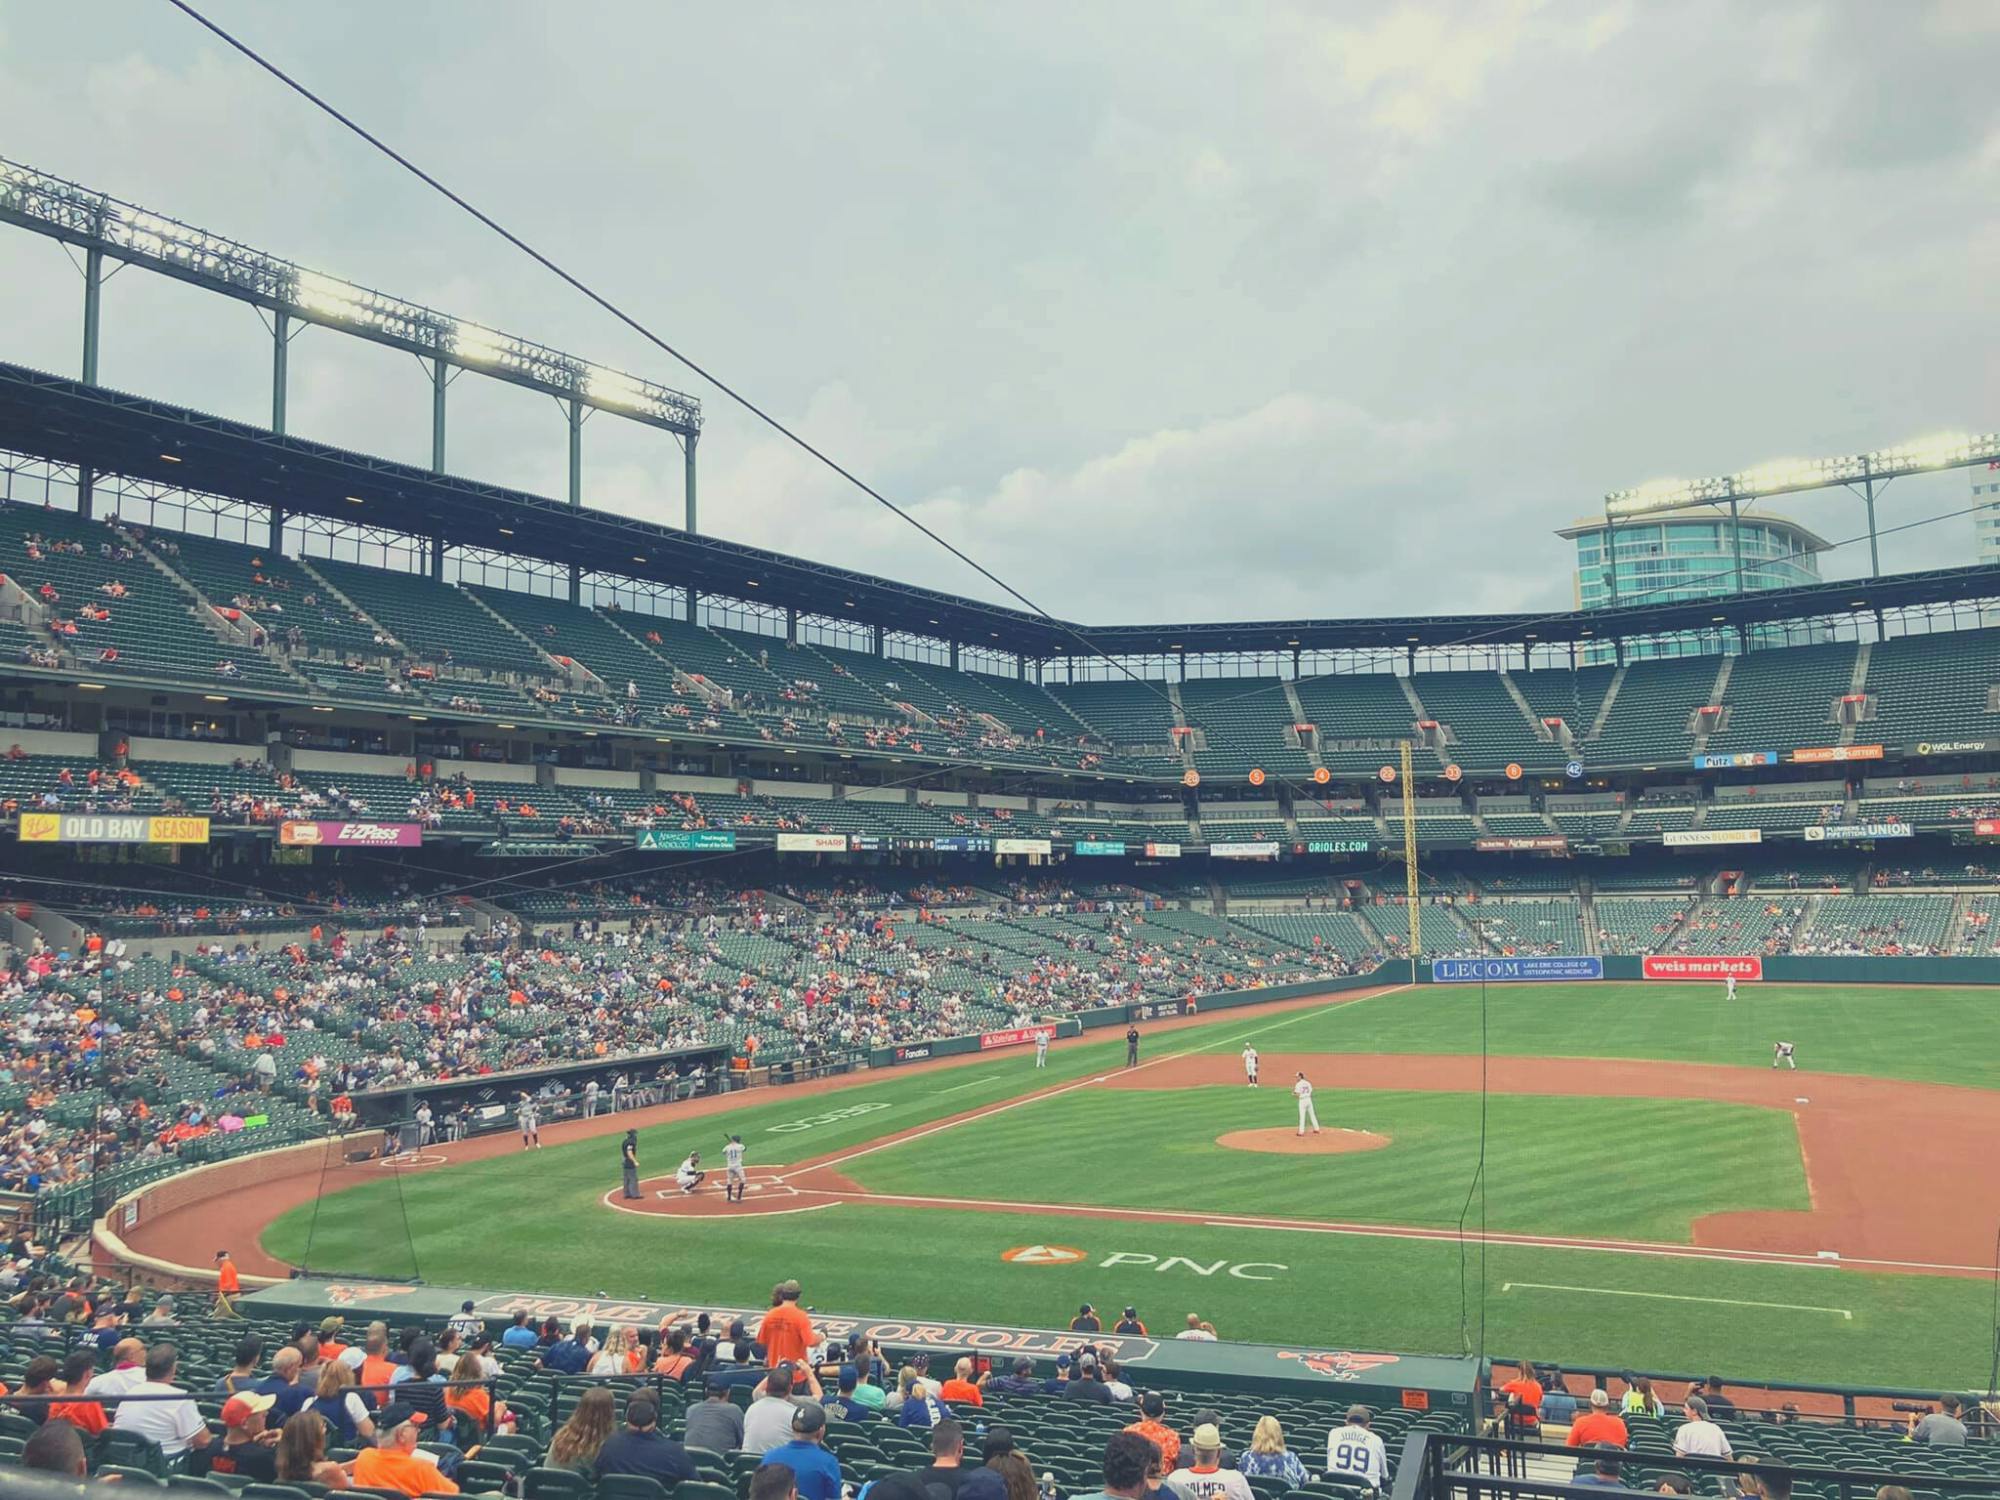 Ingressos para jogos de beisebol do Baltimore Orioles no Oriole Park